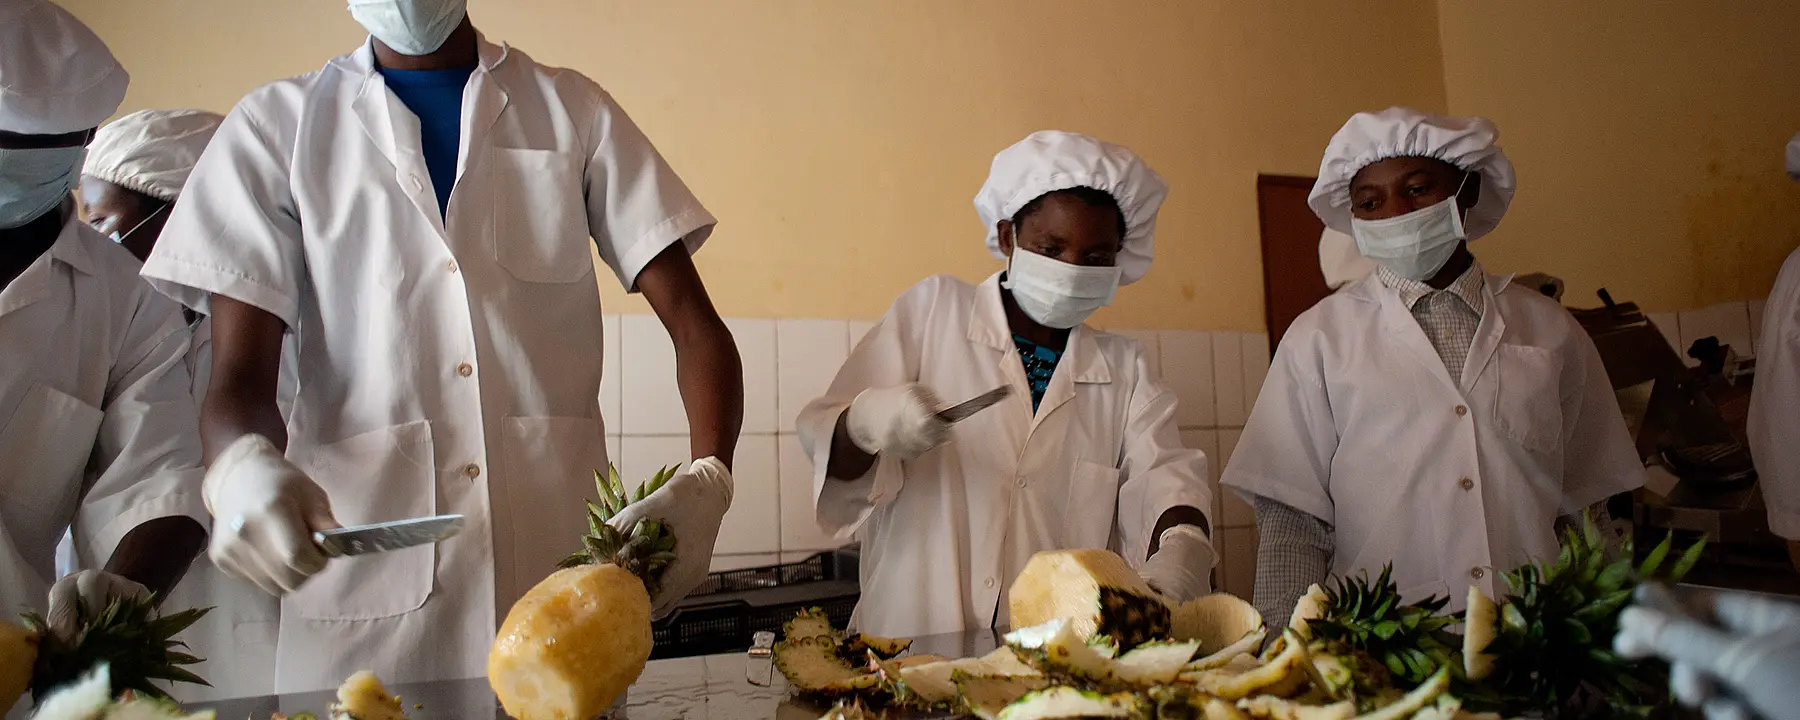 Rwandan food workers slicing pineapples